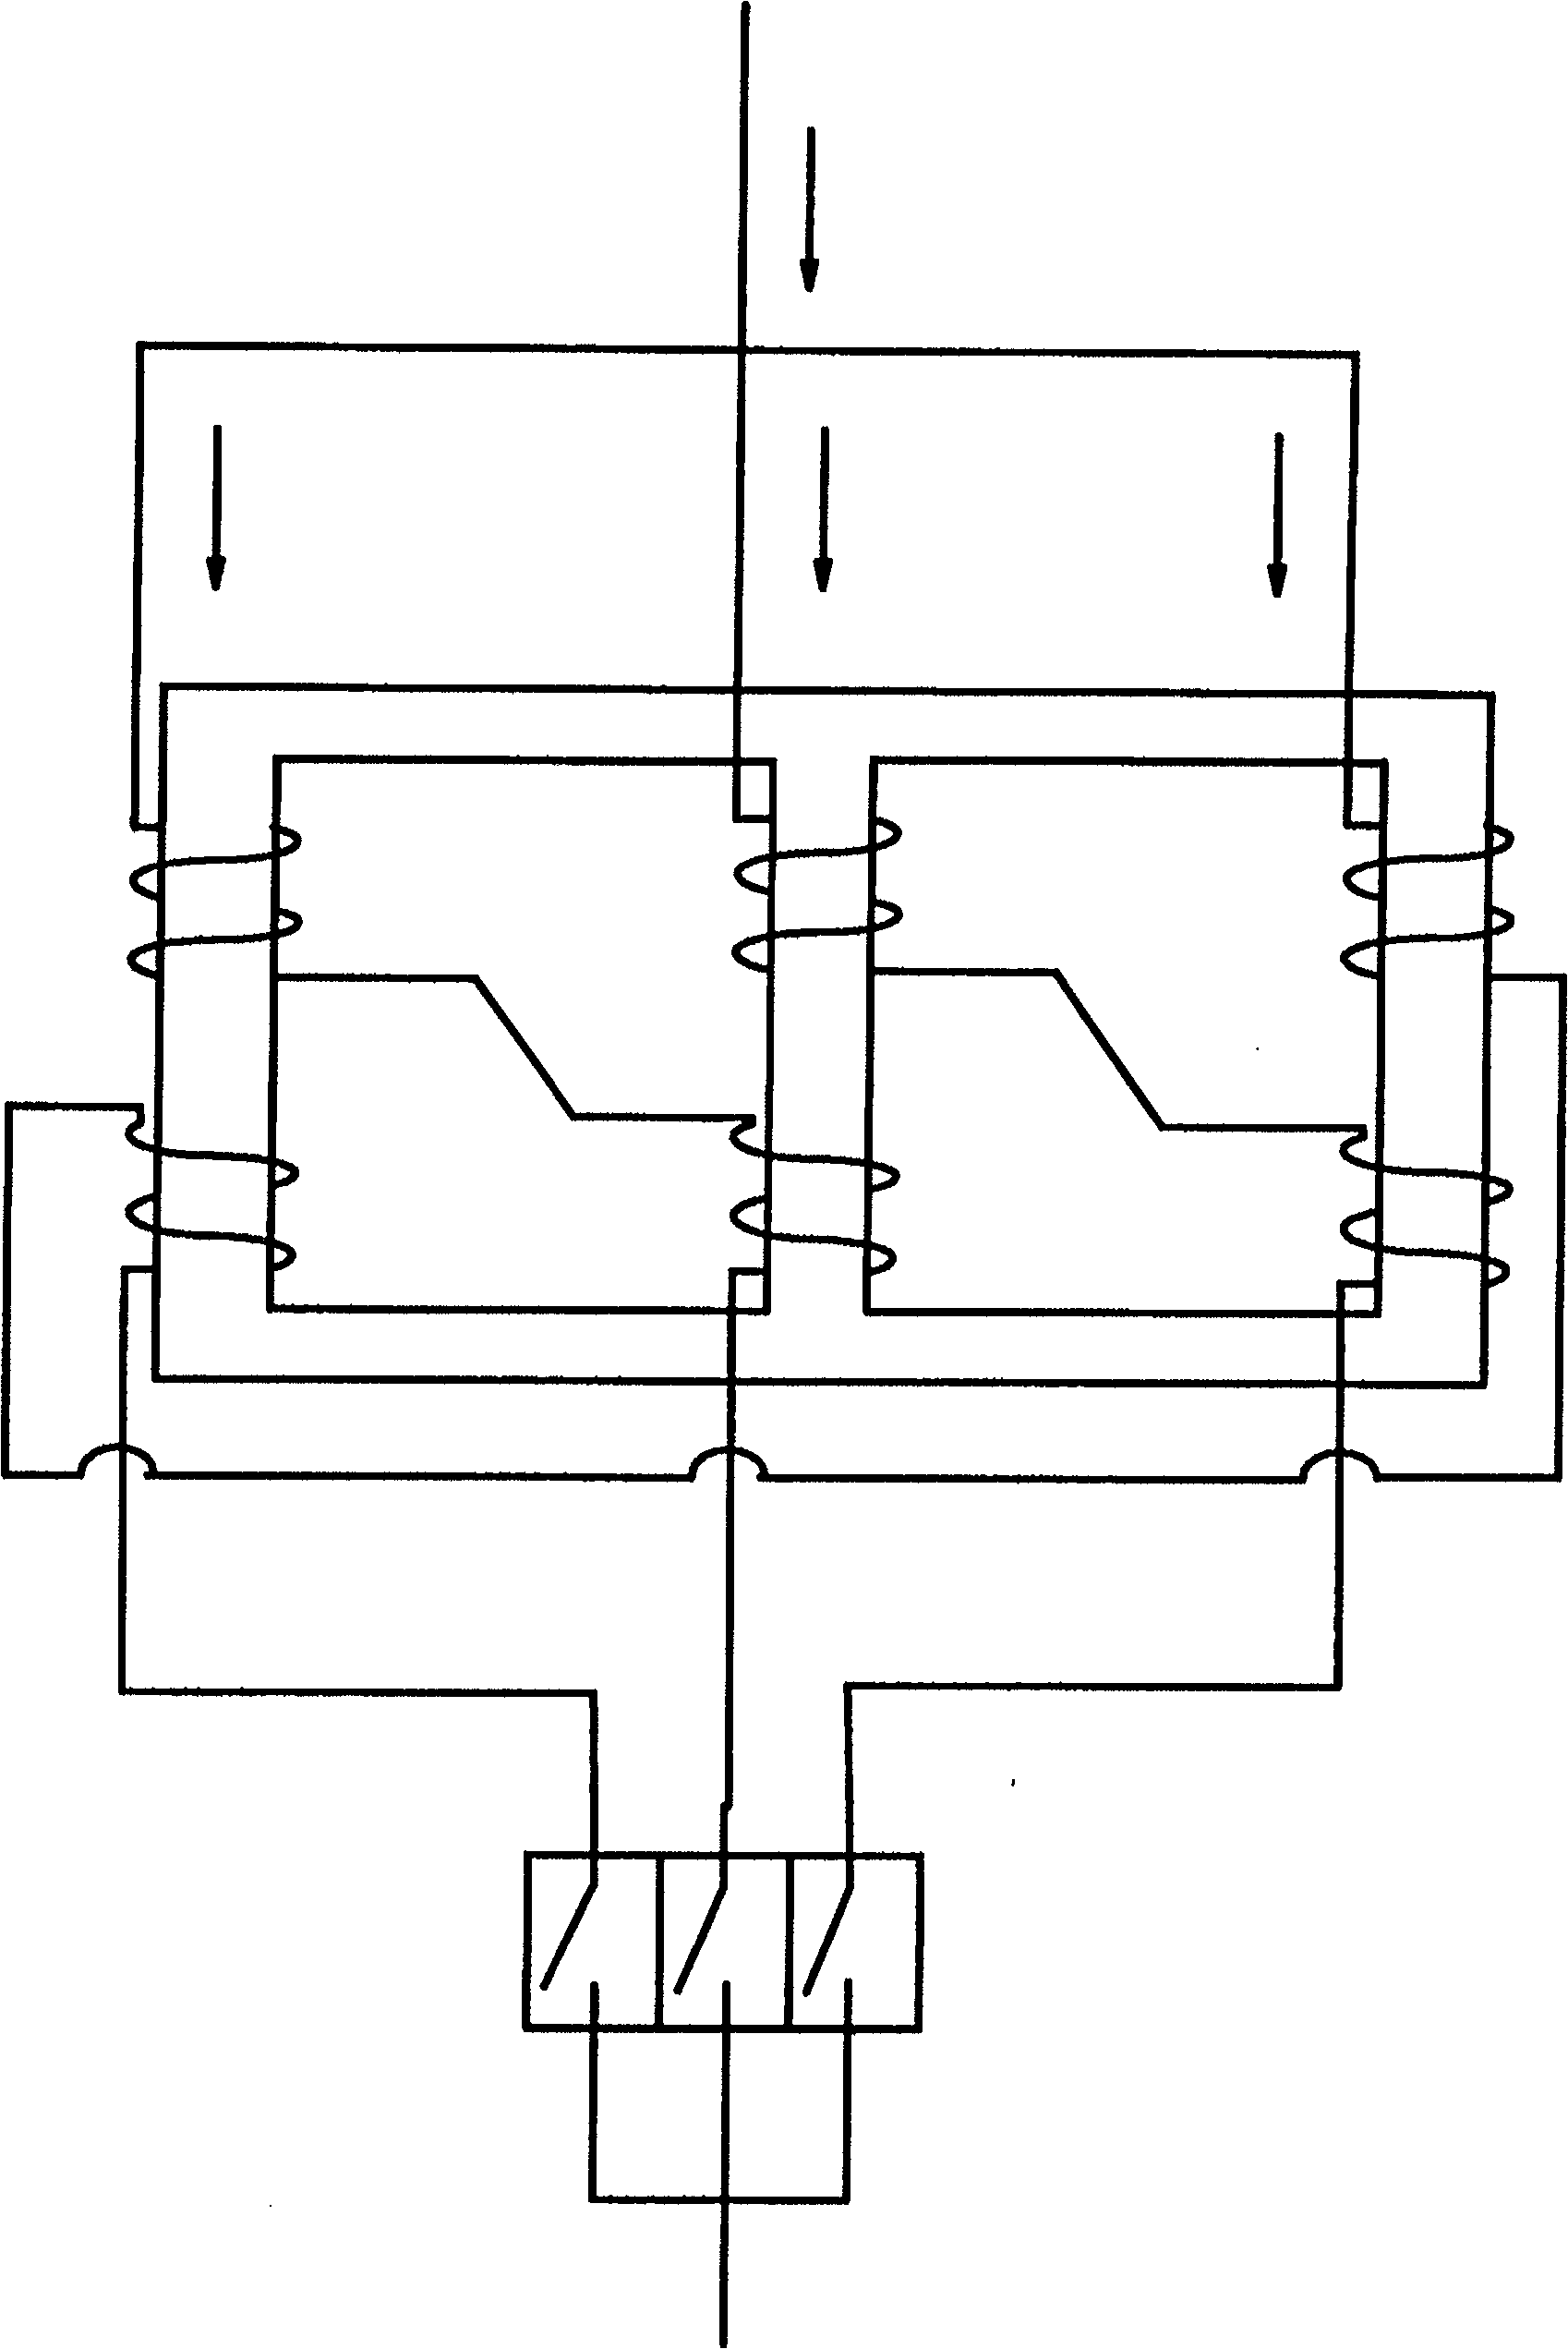 Parallel circuit breaker